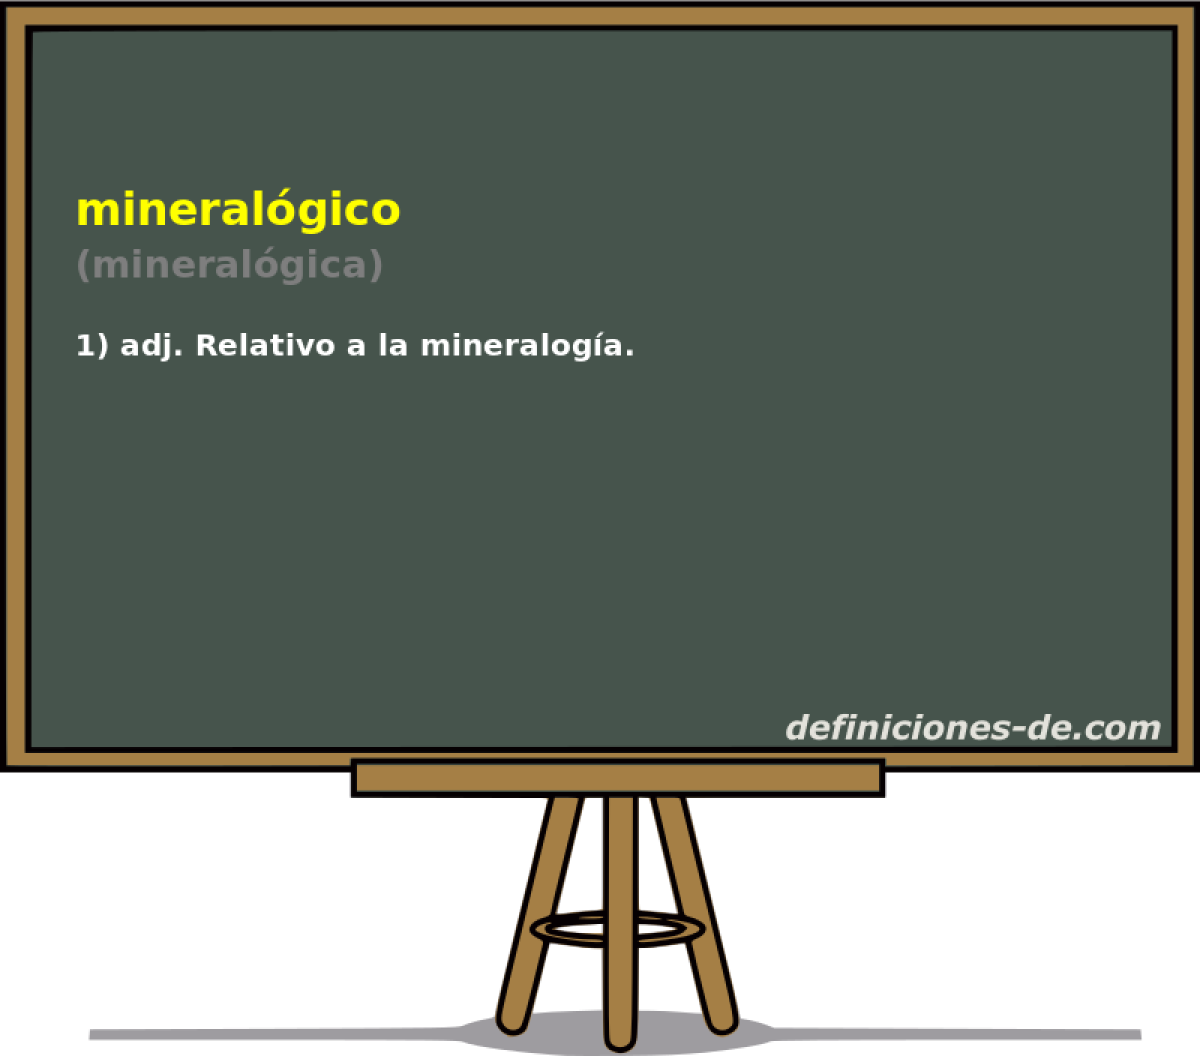 mineralgico (mineralgica)